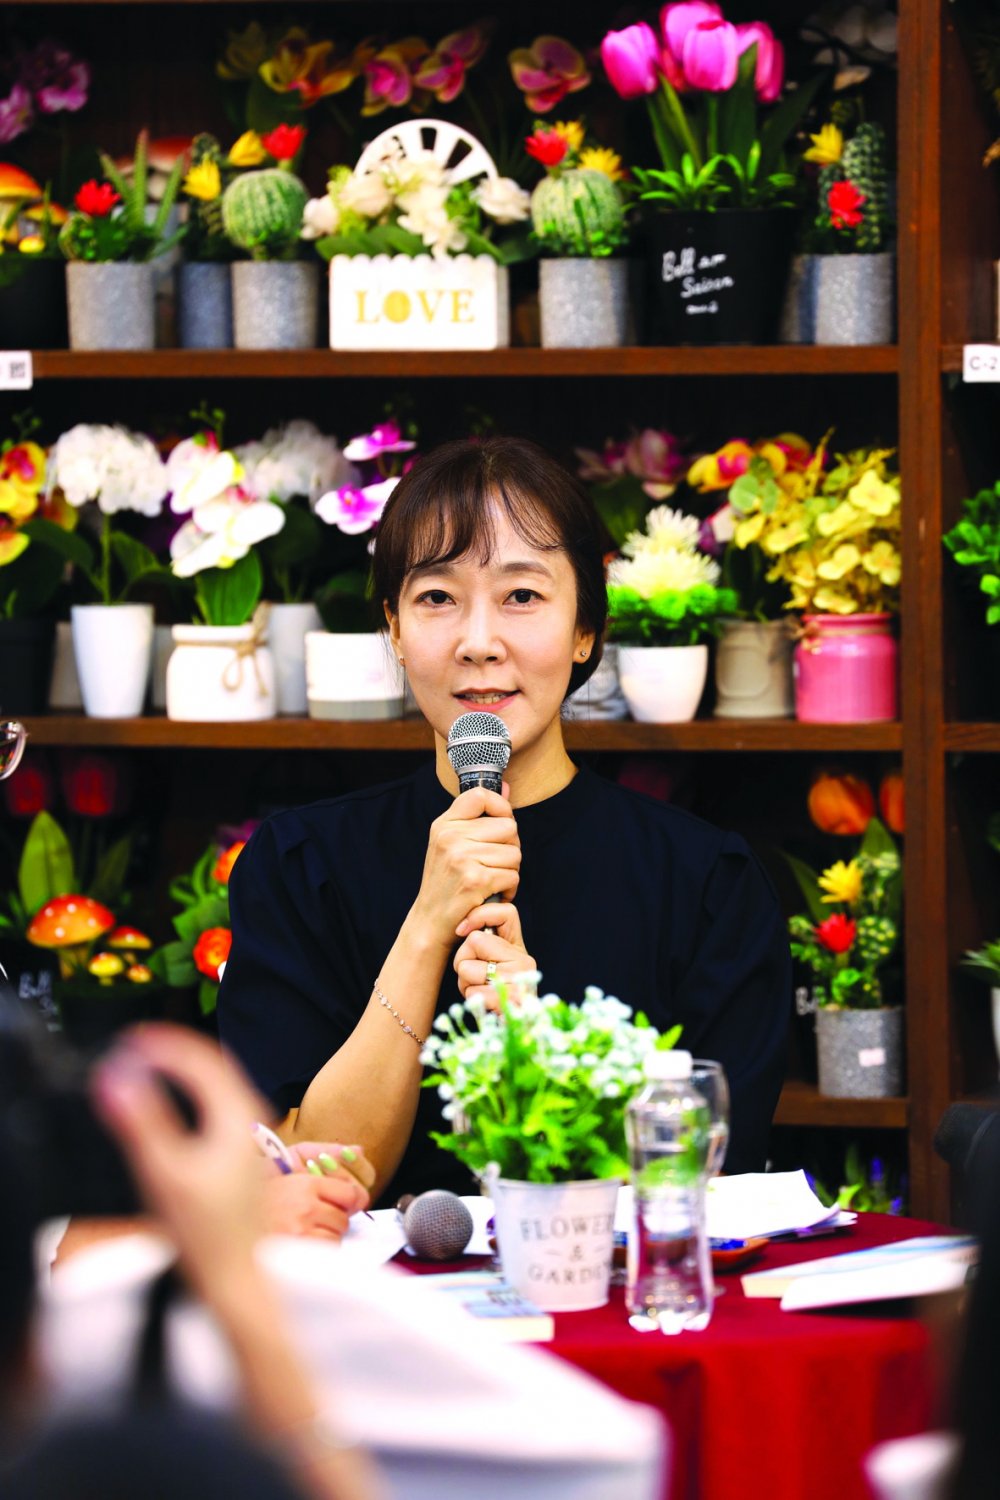 Jun Mee Kyung hiện là bác sĩ chuyên khoa sức khỏe tâm thần, Giám đốc Phòng khám Sức khỏe Tâm thần Goodmorning, giáo sư thỉnh giảng tại Đại học Dan Kook (Hàn Quốc). Nhờ kiến thức và kinh nghiệm sâu sắc về các vấn đề sức khỏe tinh thần ở người trẻ, bà còn là người hướng dẫn tinh thần của nhiều bệnh nhân trẻ tuổi.